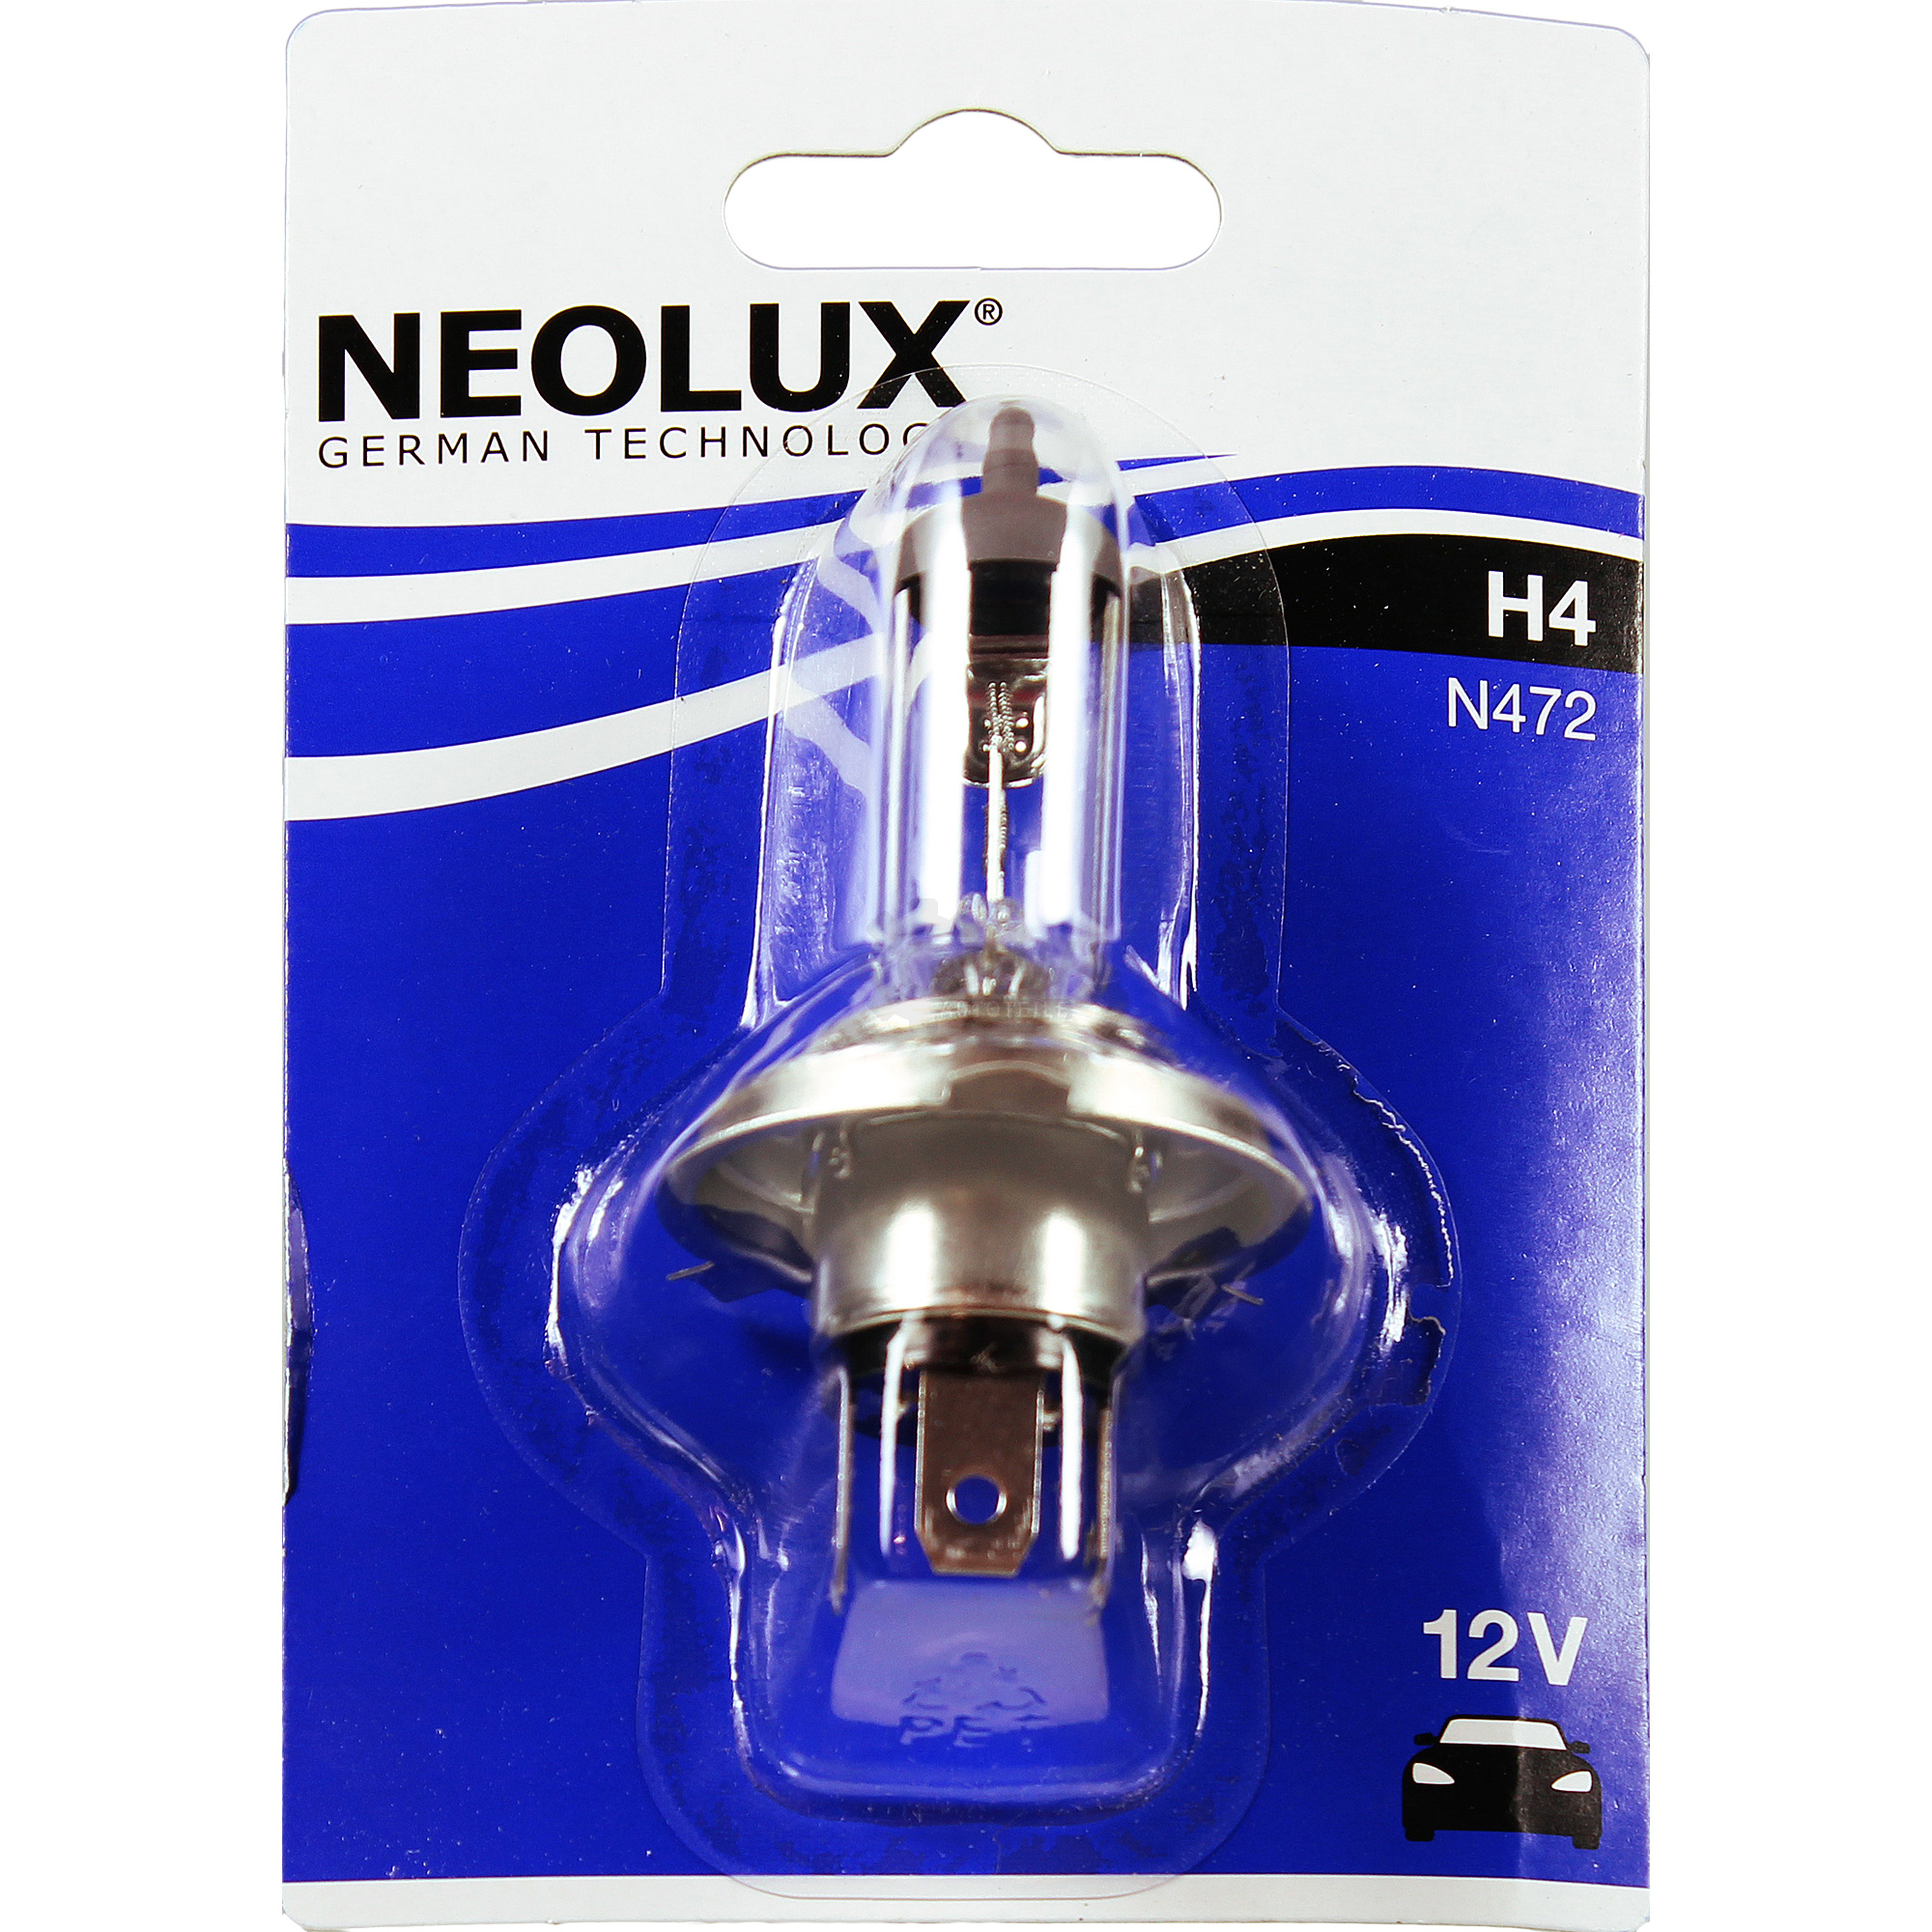 NEOLUX H4 Standard 60/55W P43t 12V Blister Lampe Birne